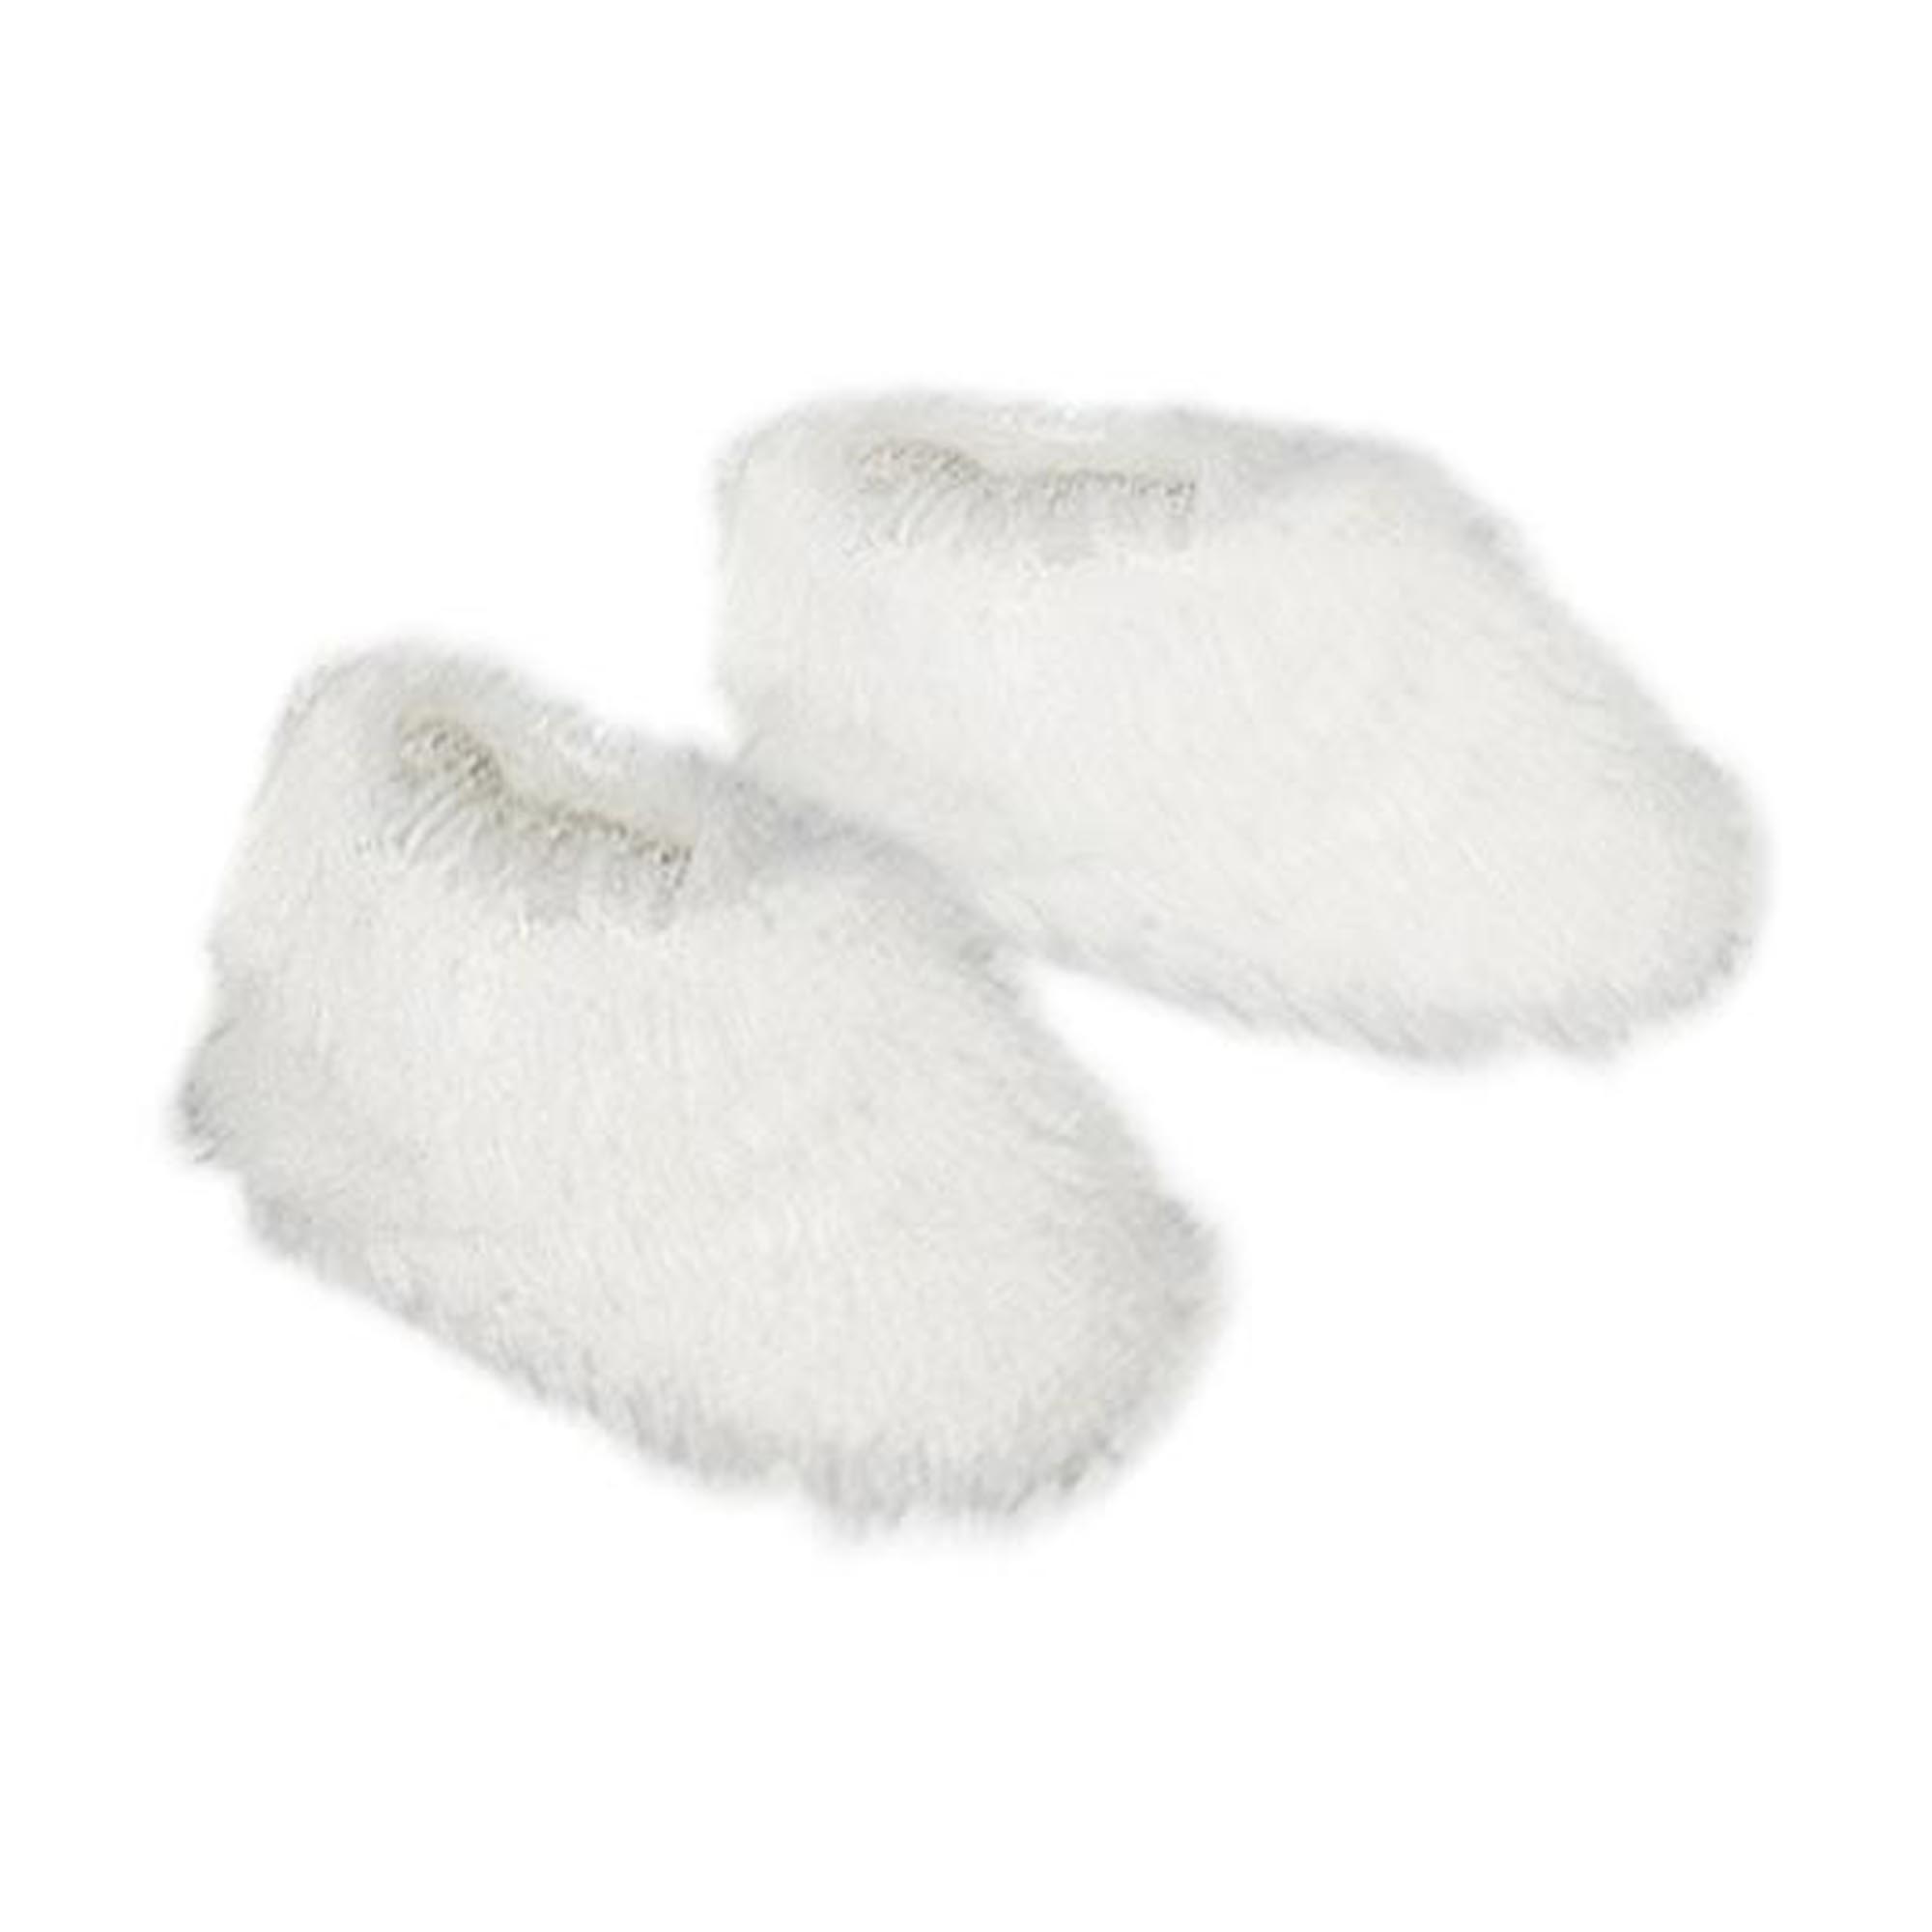 Sophia’s Fluffy Fuzzy Slippers for 18” Dolls, White